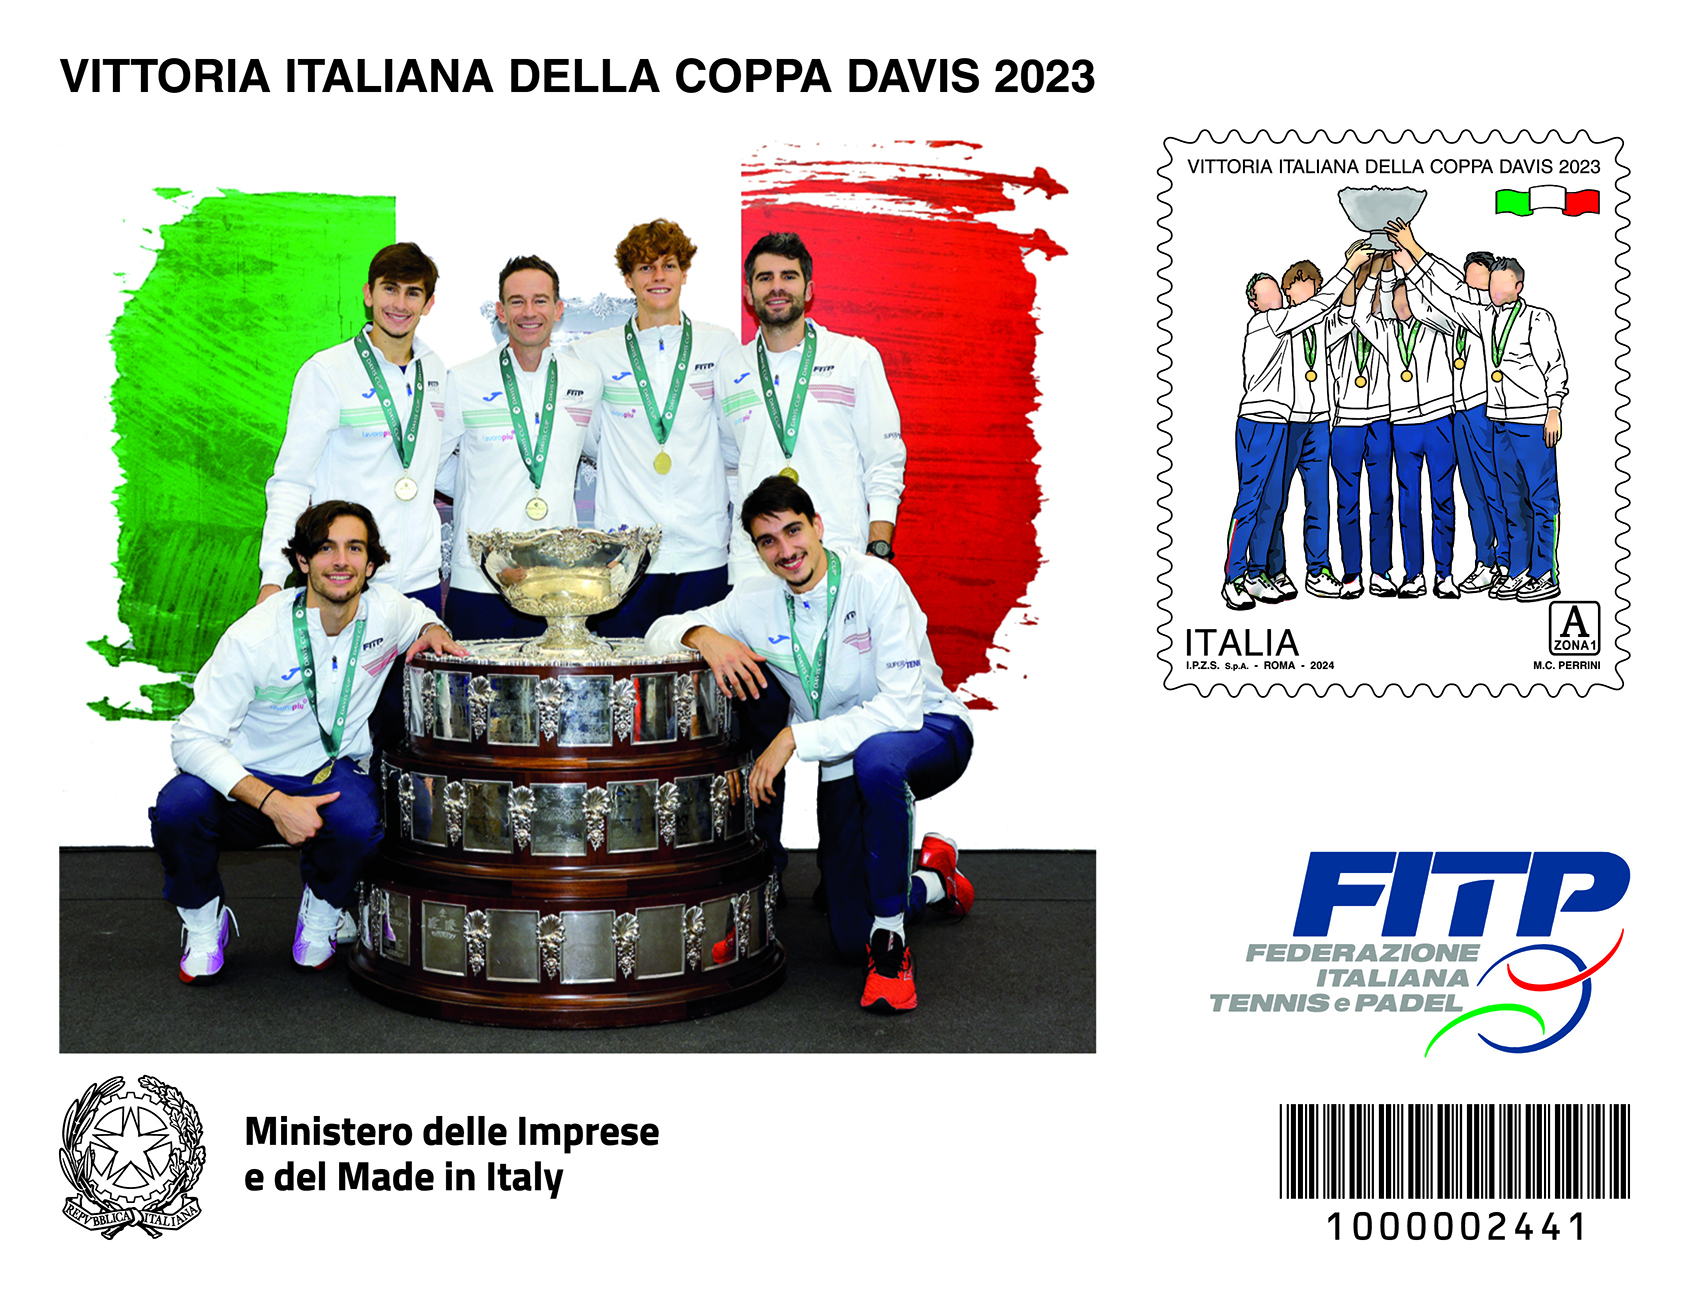 Emesso un francobollo dedicato alla vittoria italiana della Coppa Davis 2023